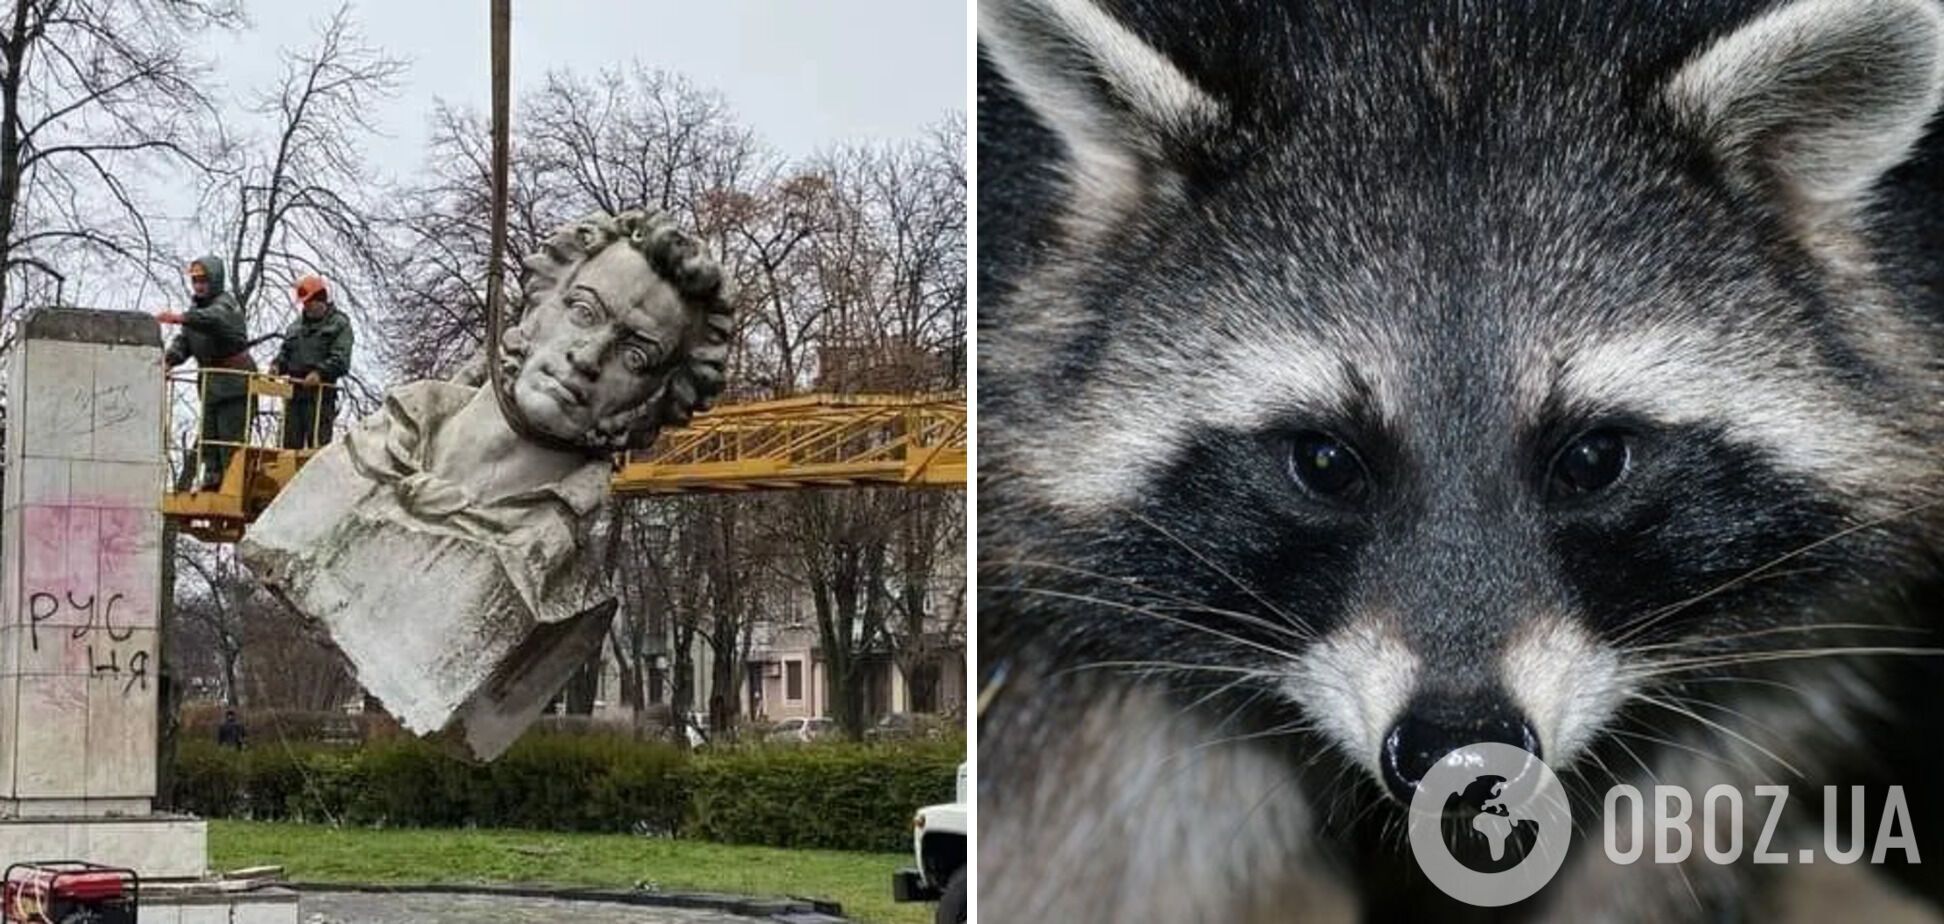 Україна готова обміняти знесені пам'ятники Пушкіну на херсонського єнота